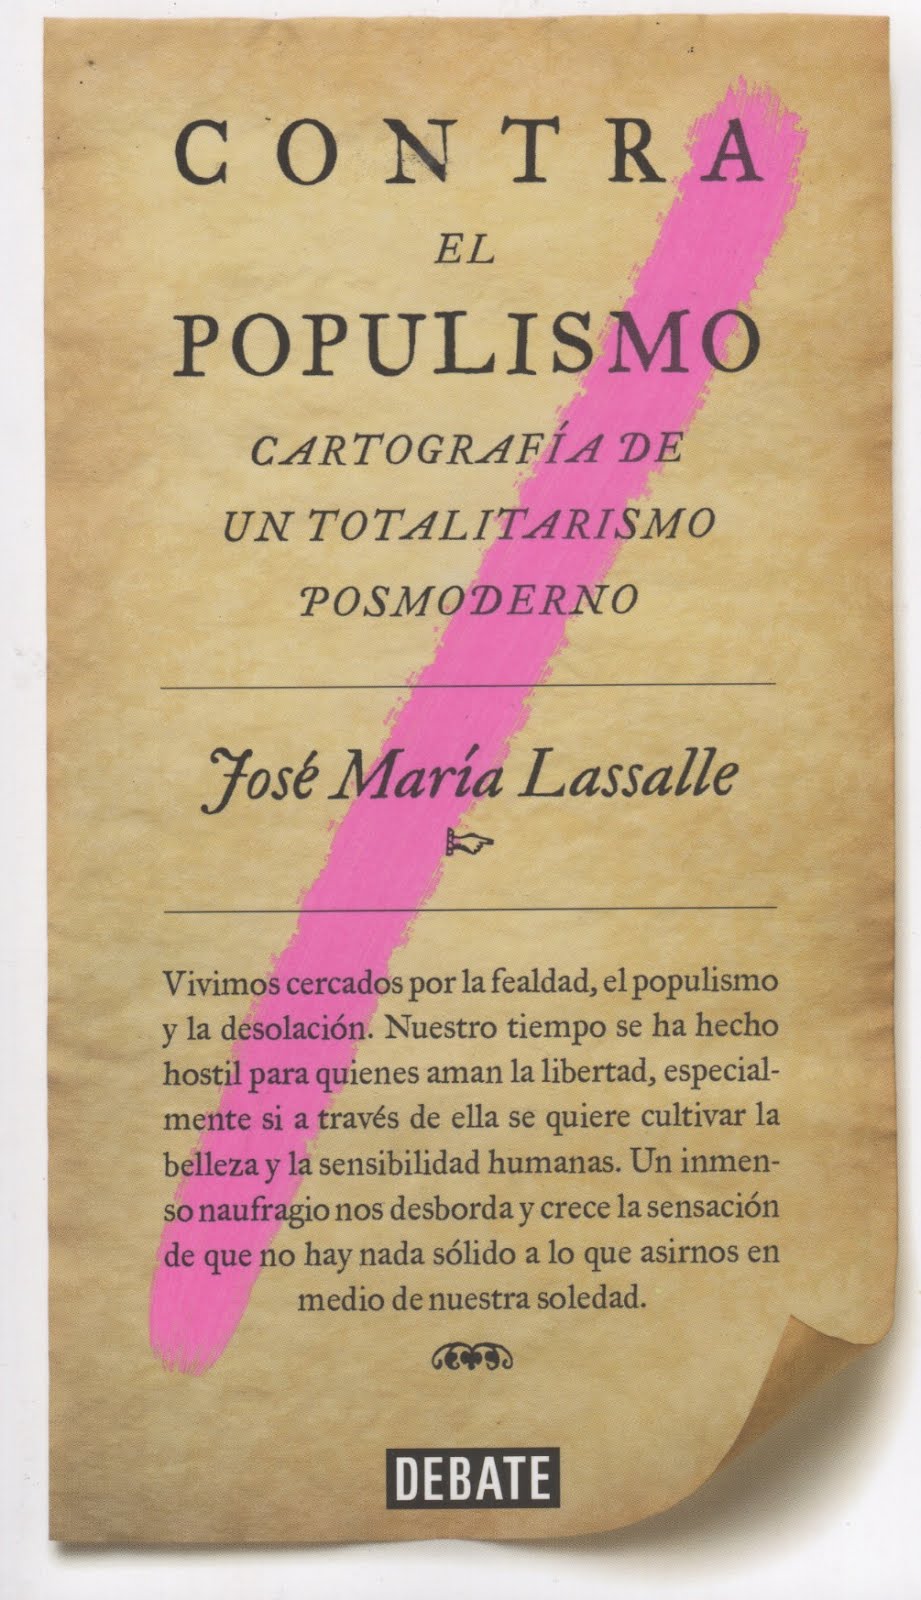 José María Lassalle (Contra el populismo) Cartografía de un totalitarismo posmoderno